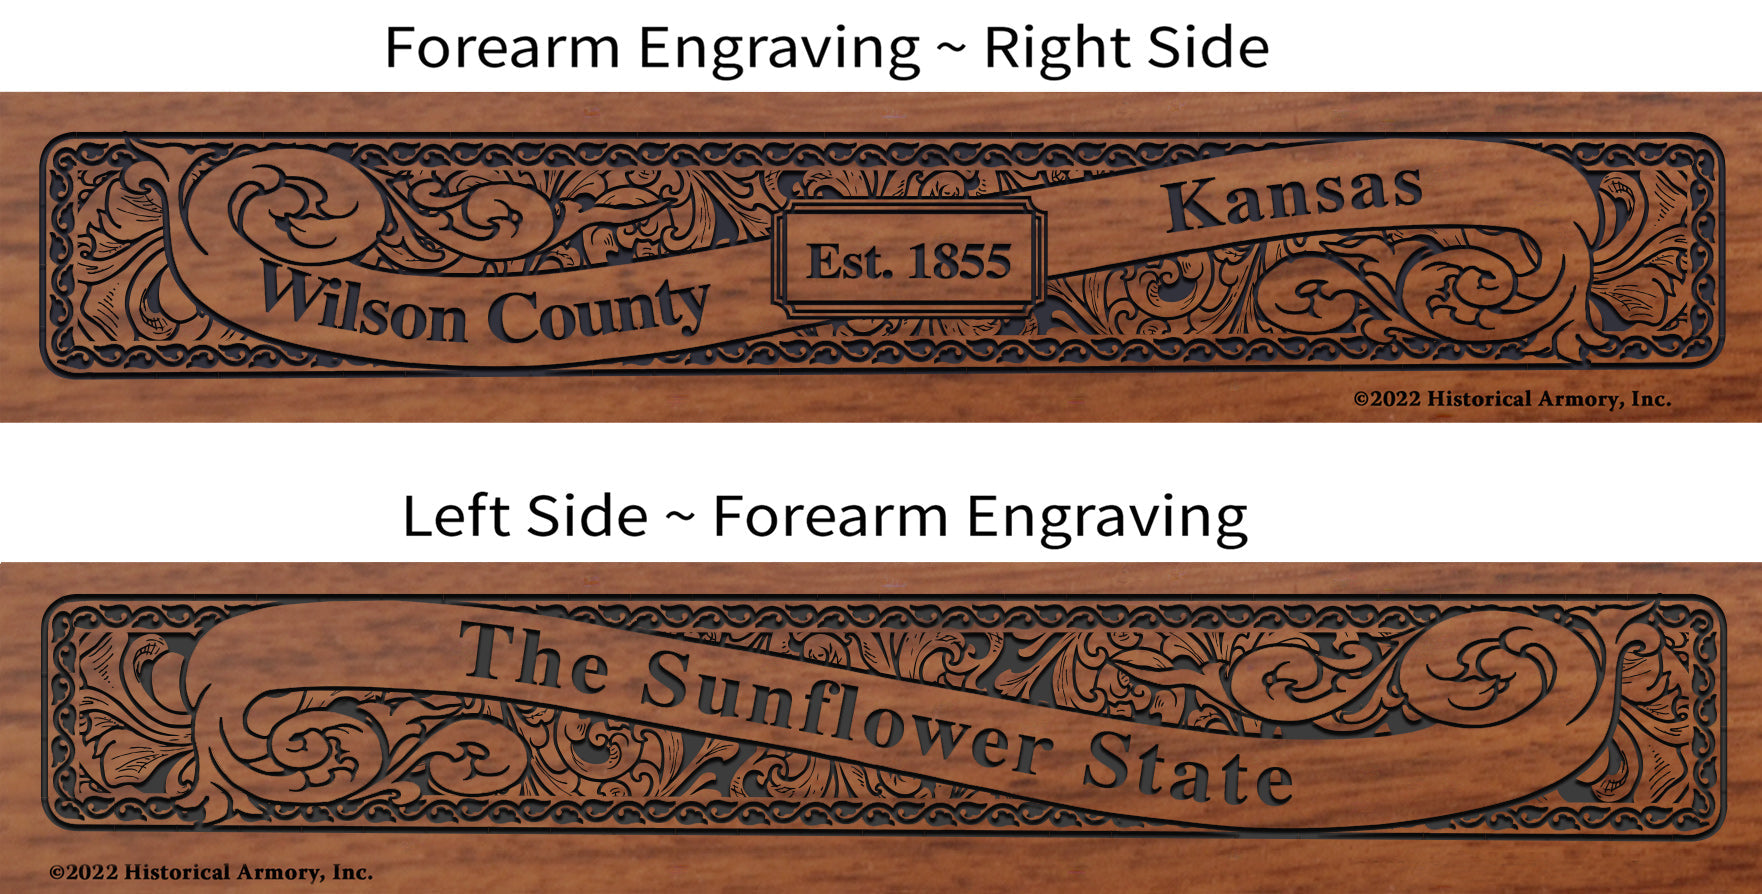 Wilson County Kansas Engraved Rifle Forearm